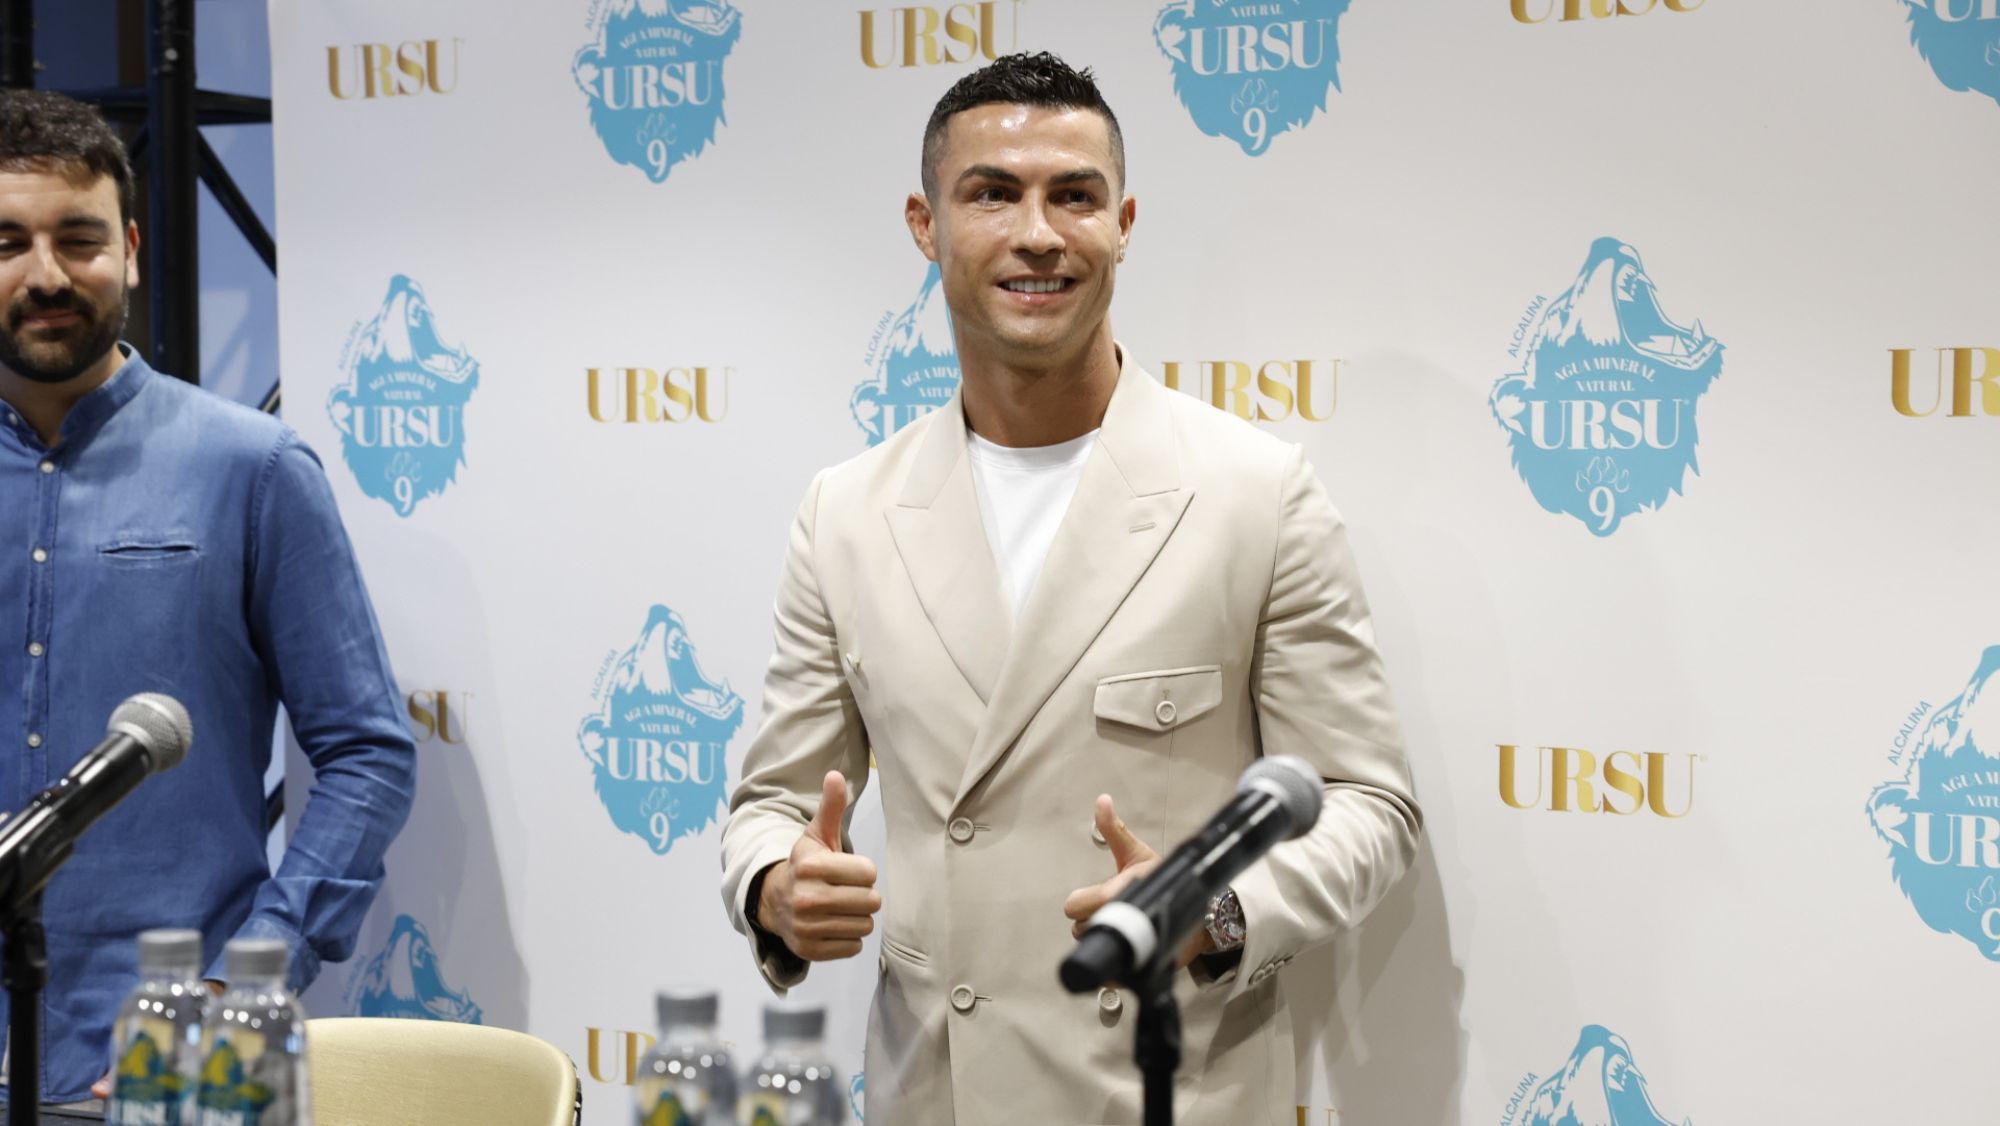 Cristiano Ronaldo en la presentación del agua Ursu